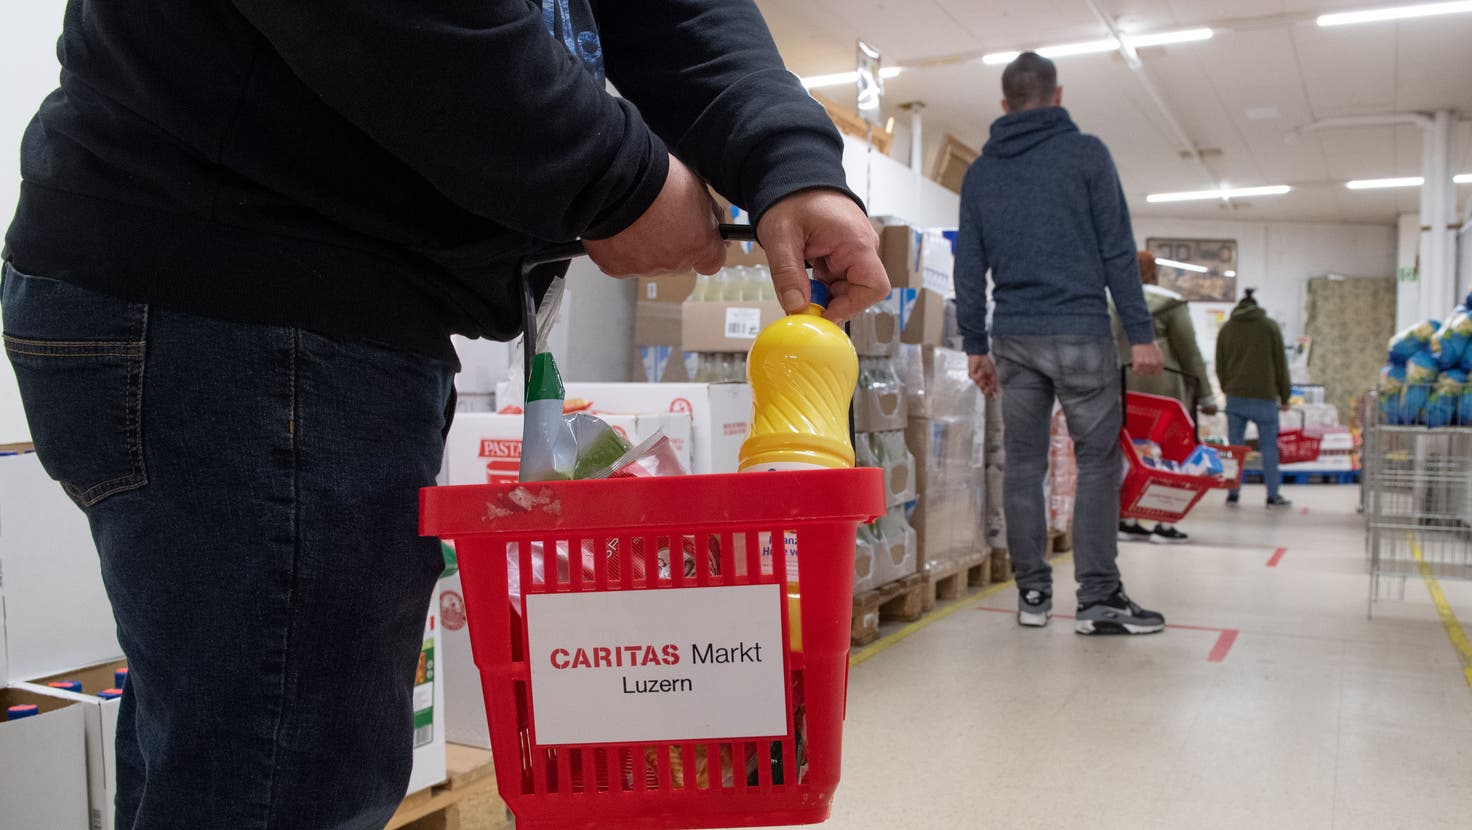 Im Caritas-Markt in Luzern können Armutsbetroffene mit Gutscheinen vergünstigt Lebensmittel einkaufen. (Bild: Boris Bürgisser (13. Mai 2020))